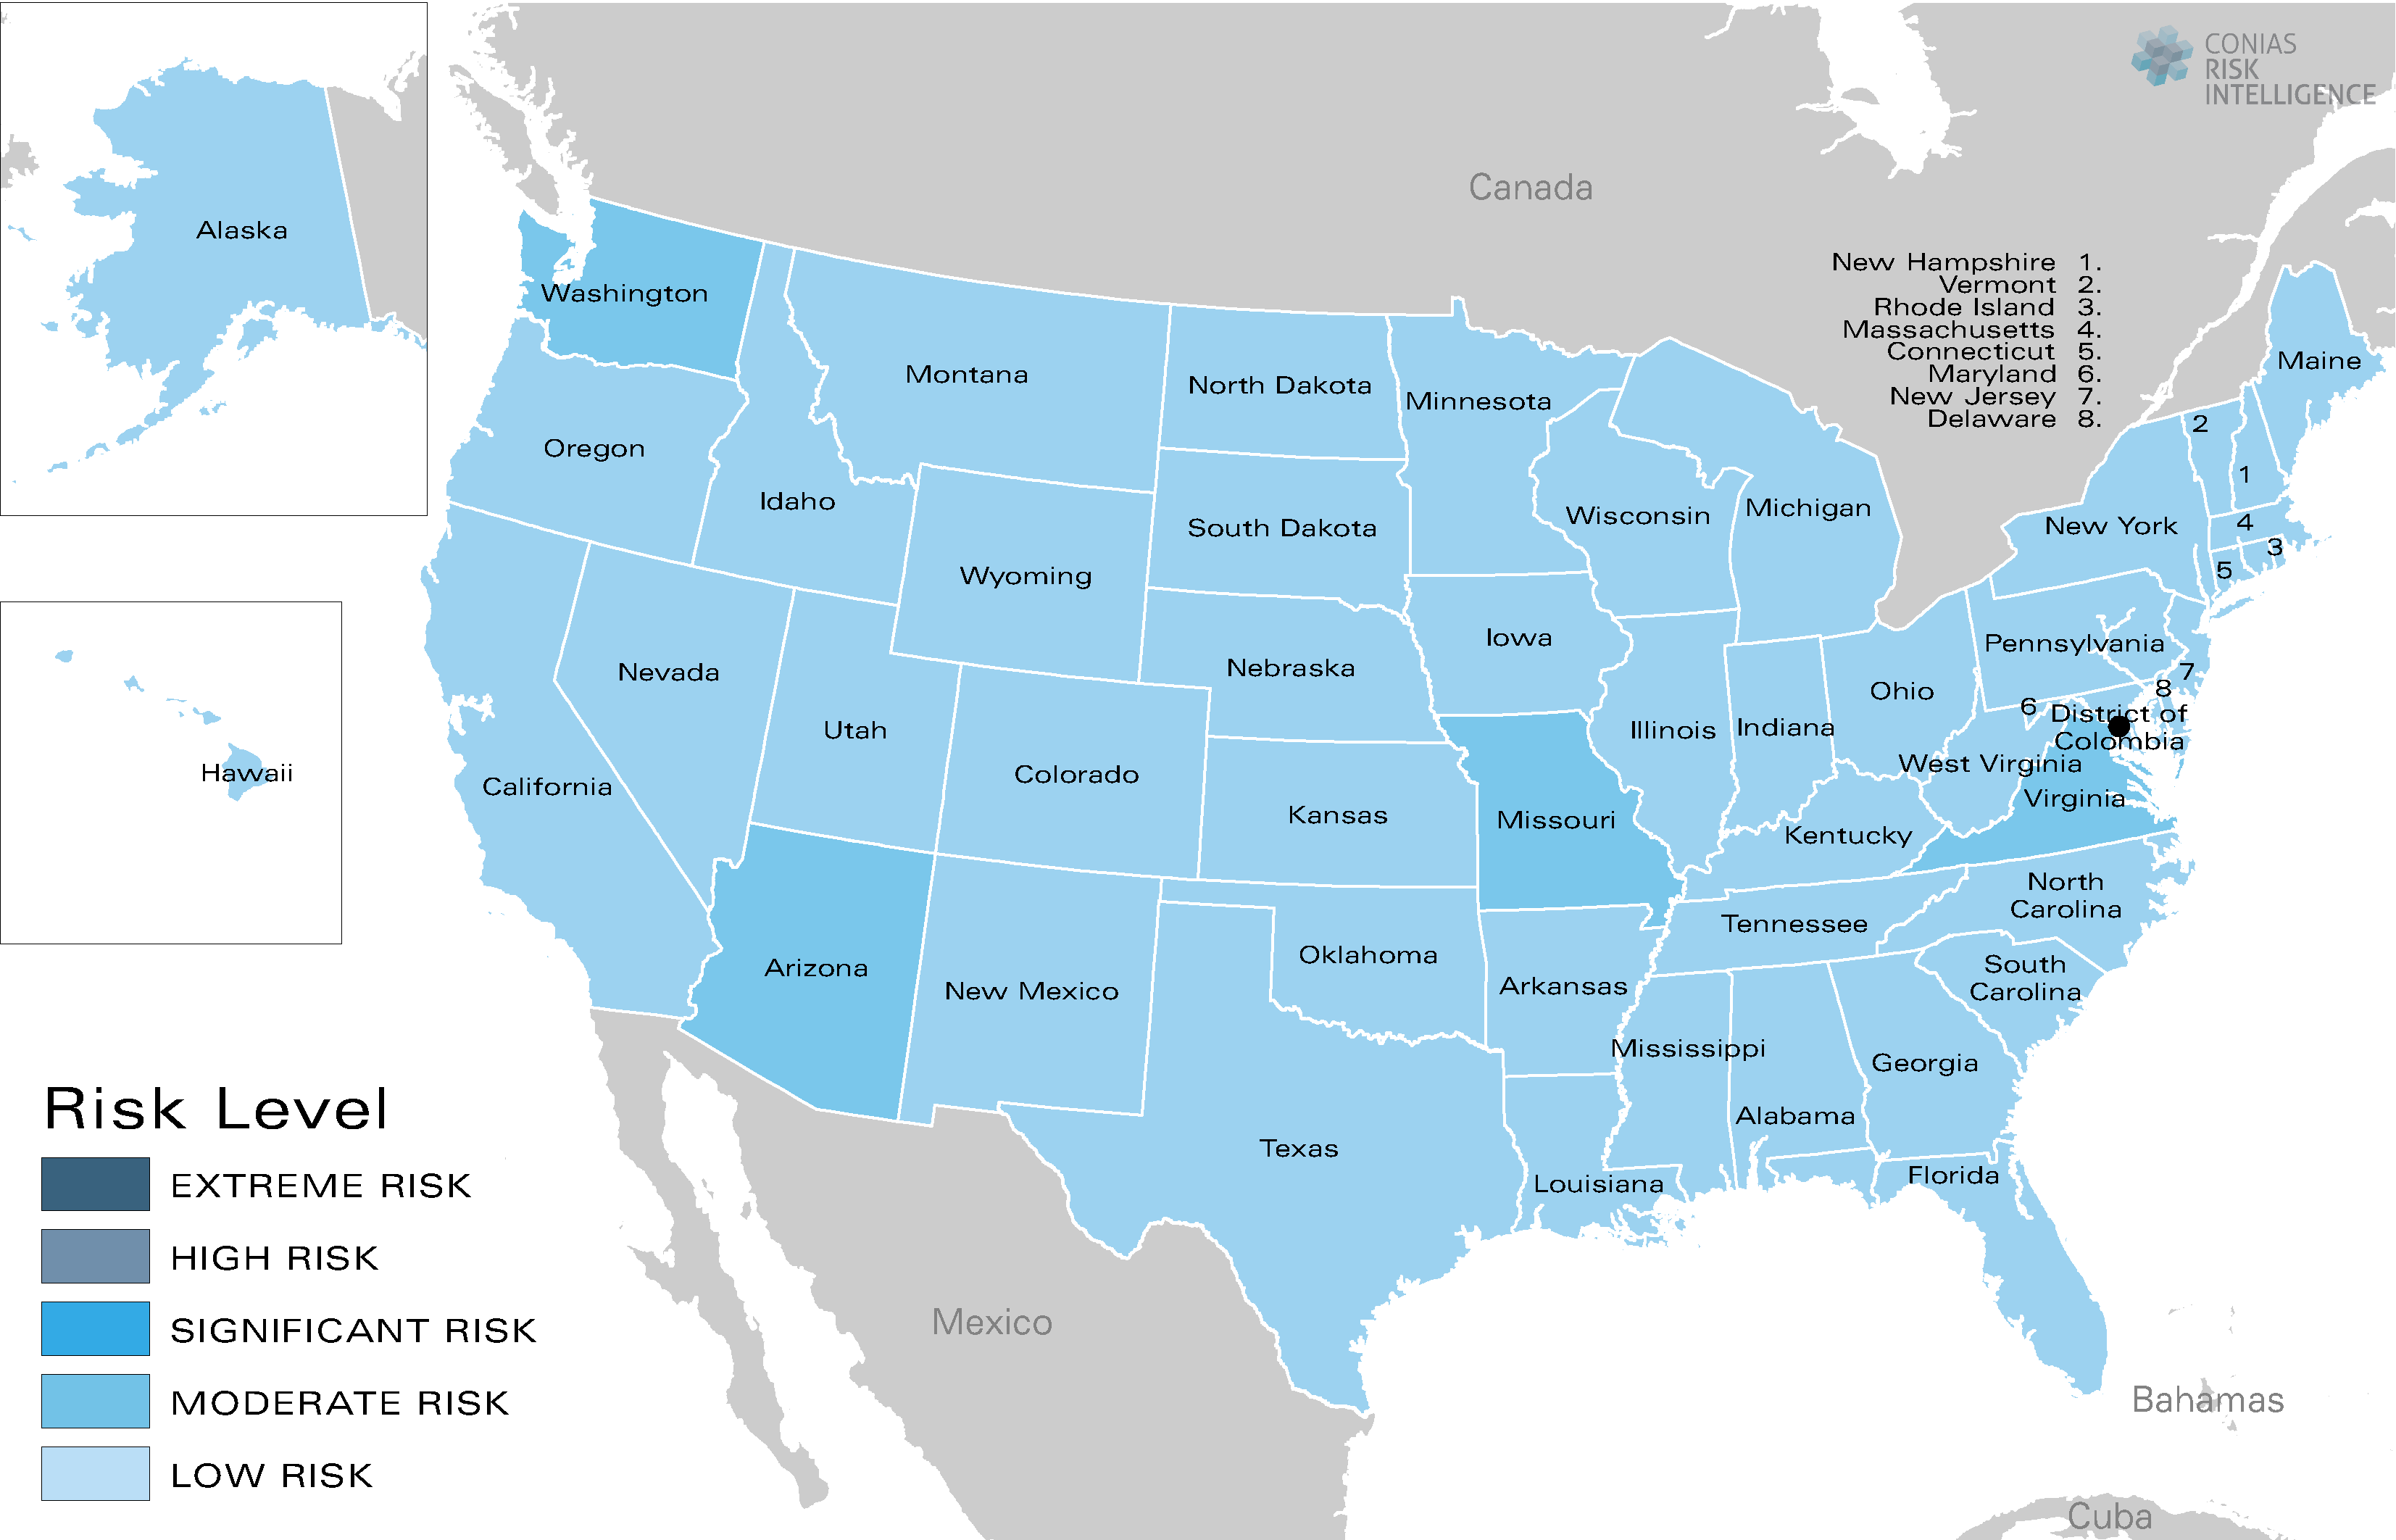 CONIAS Political Risk Map USA